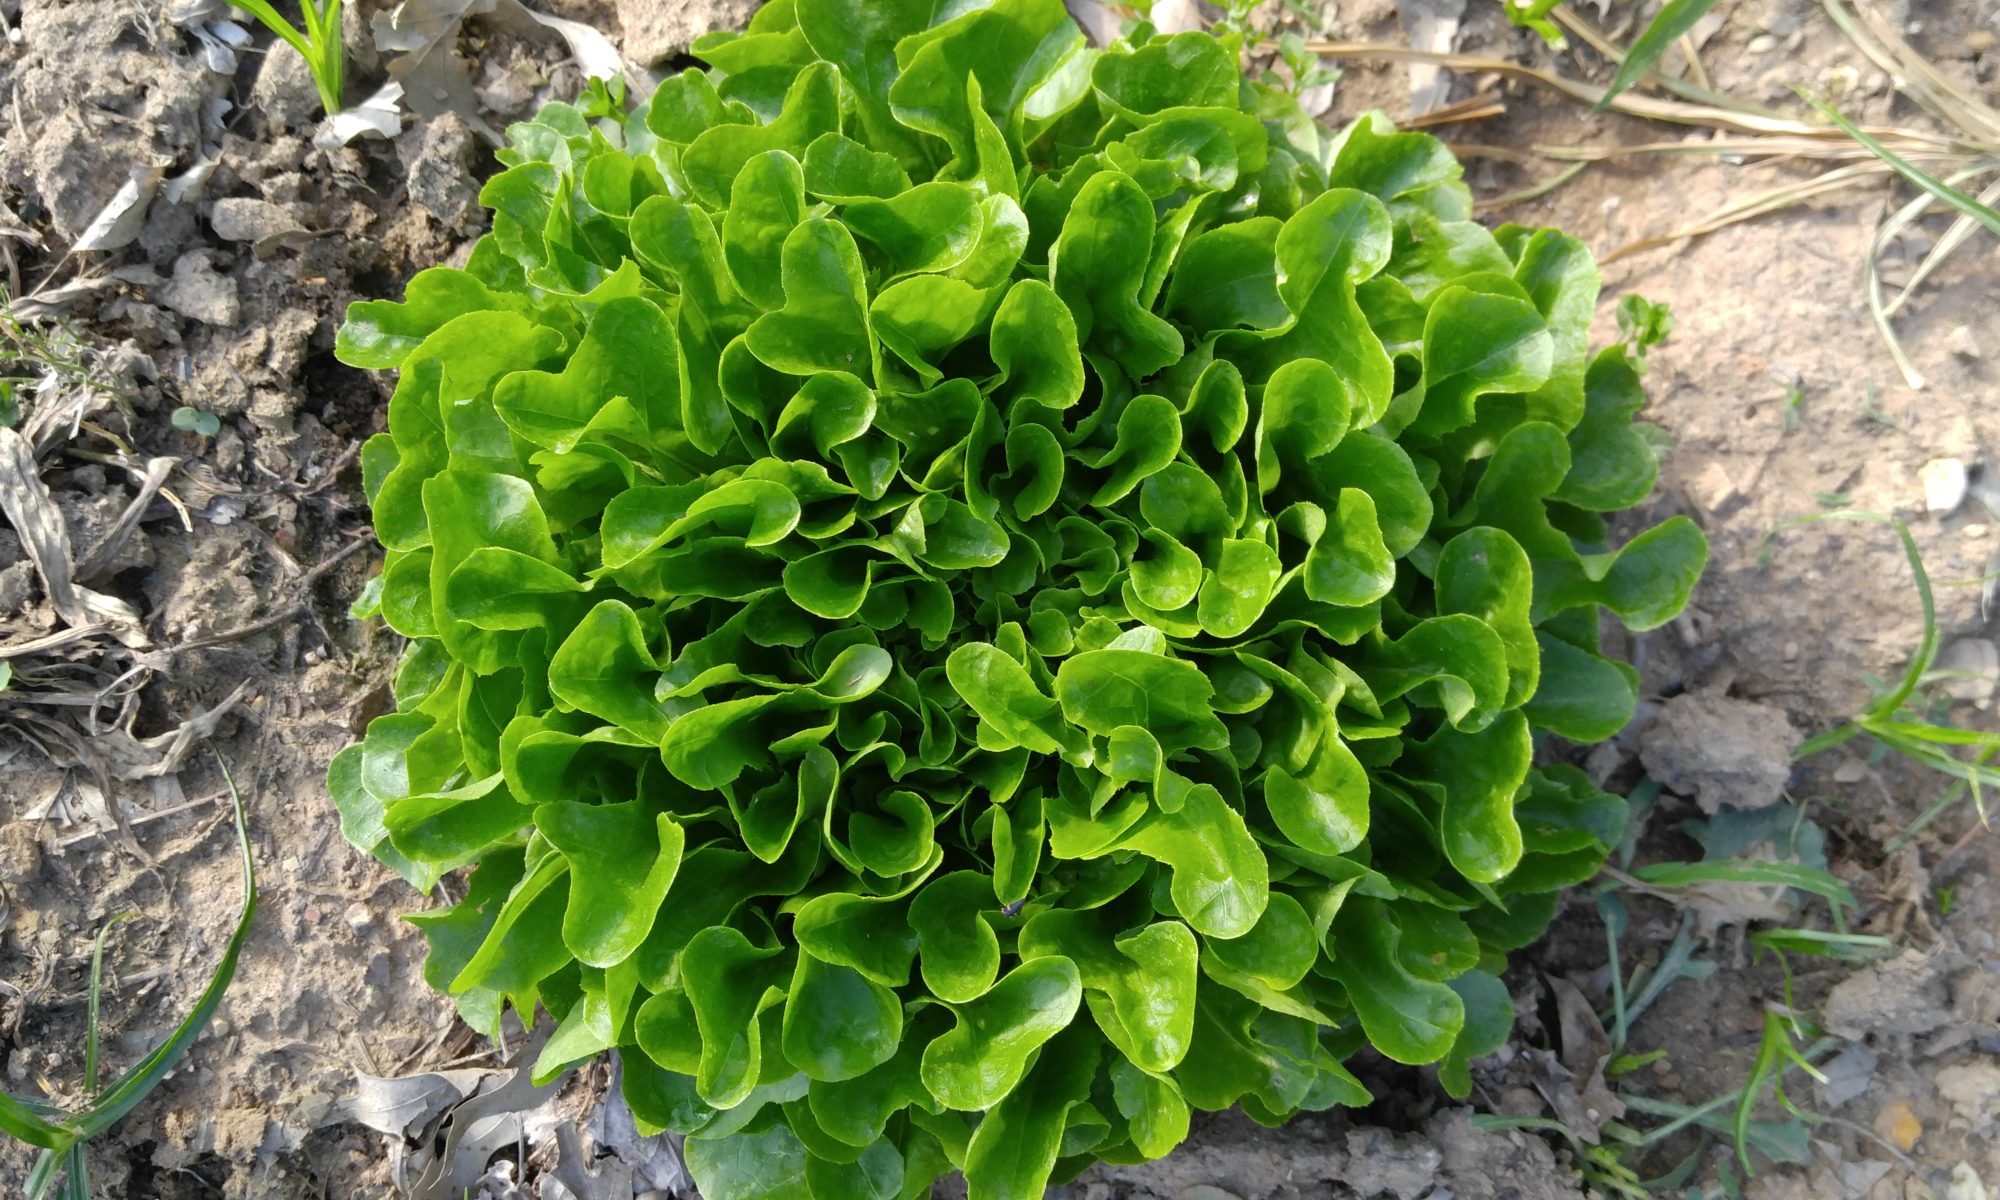 Head of lettuce growing in the garden